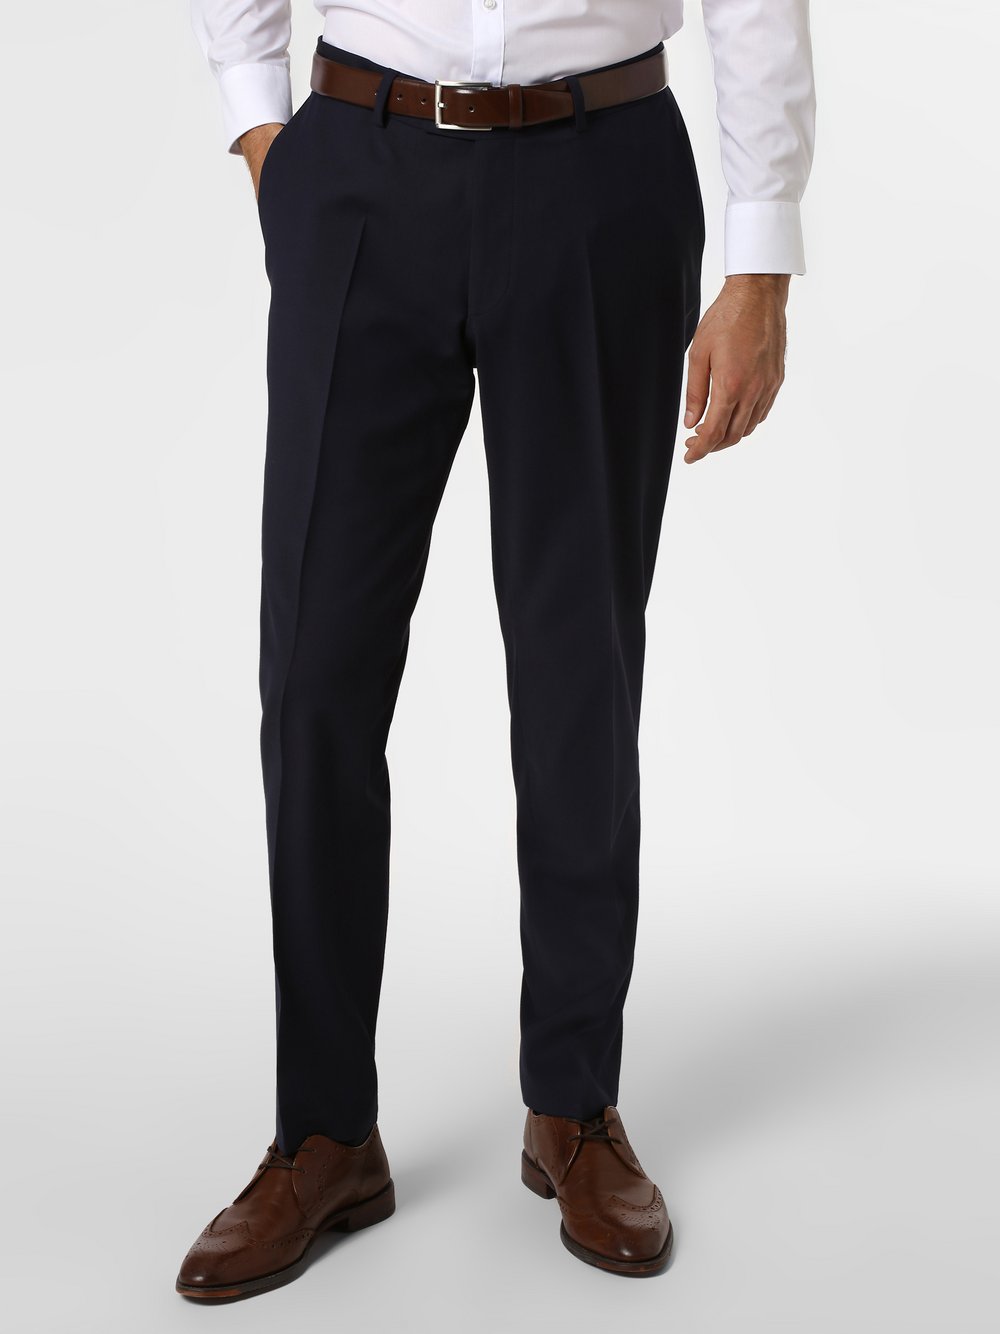 Finshley & Harding London - Męskie spodnie od garnituru modułowego – Grant Athletic, niebieski